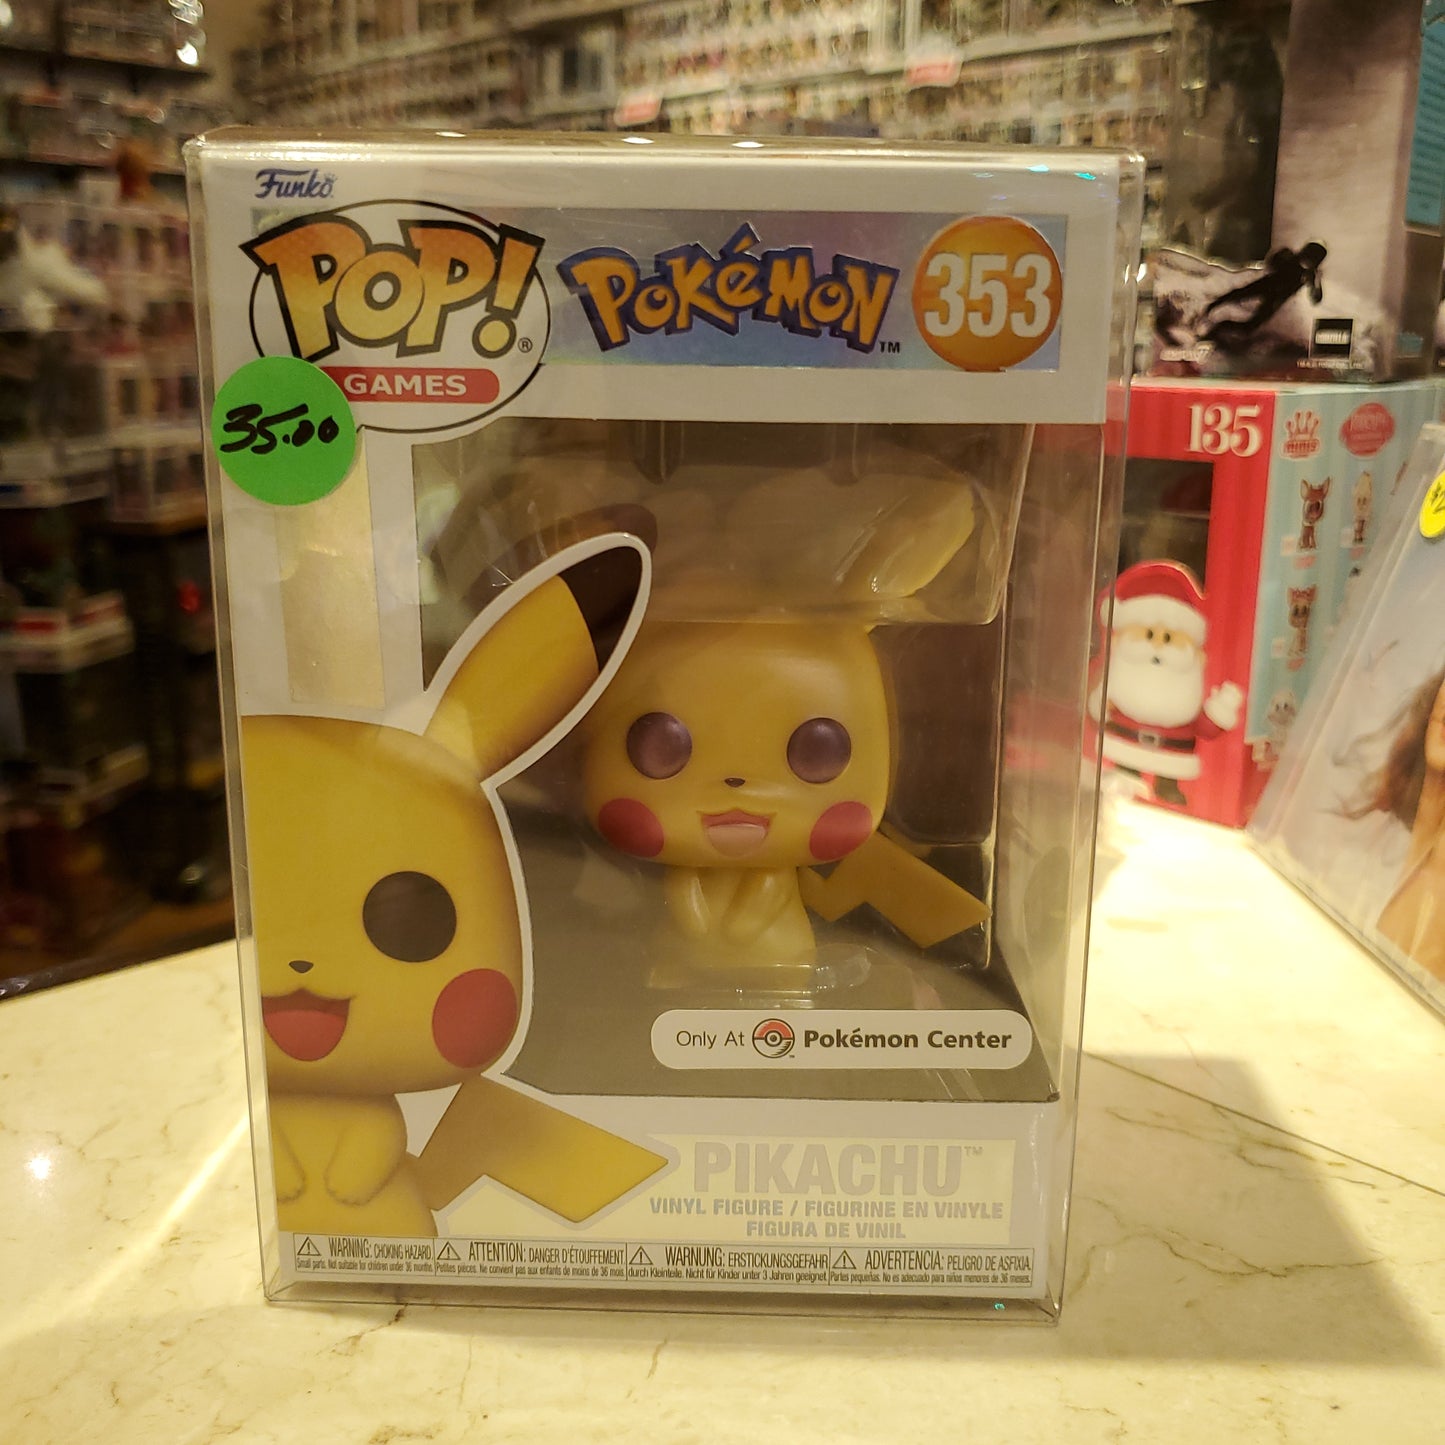 Pokémon - Pikachu #353 - Funko Pop! Vinyl Figure (Video Games)